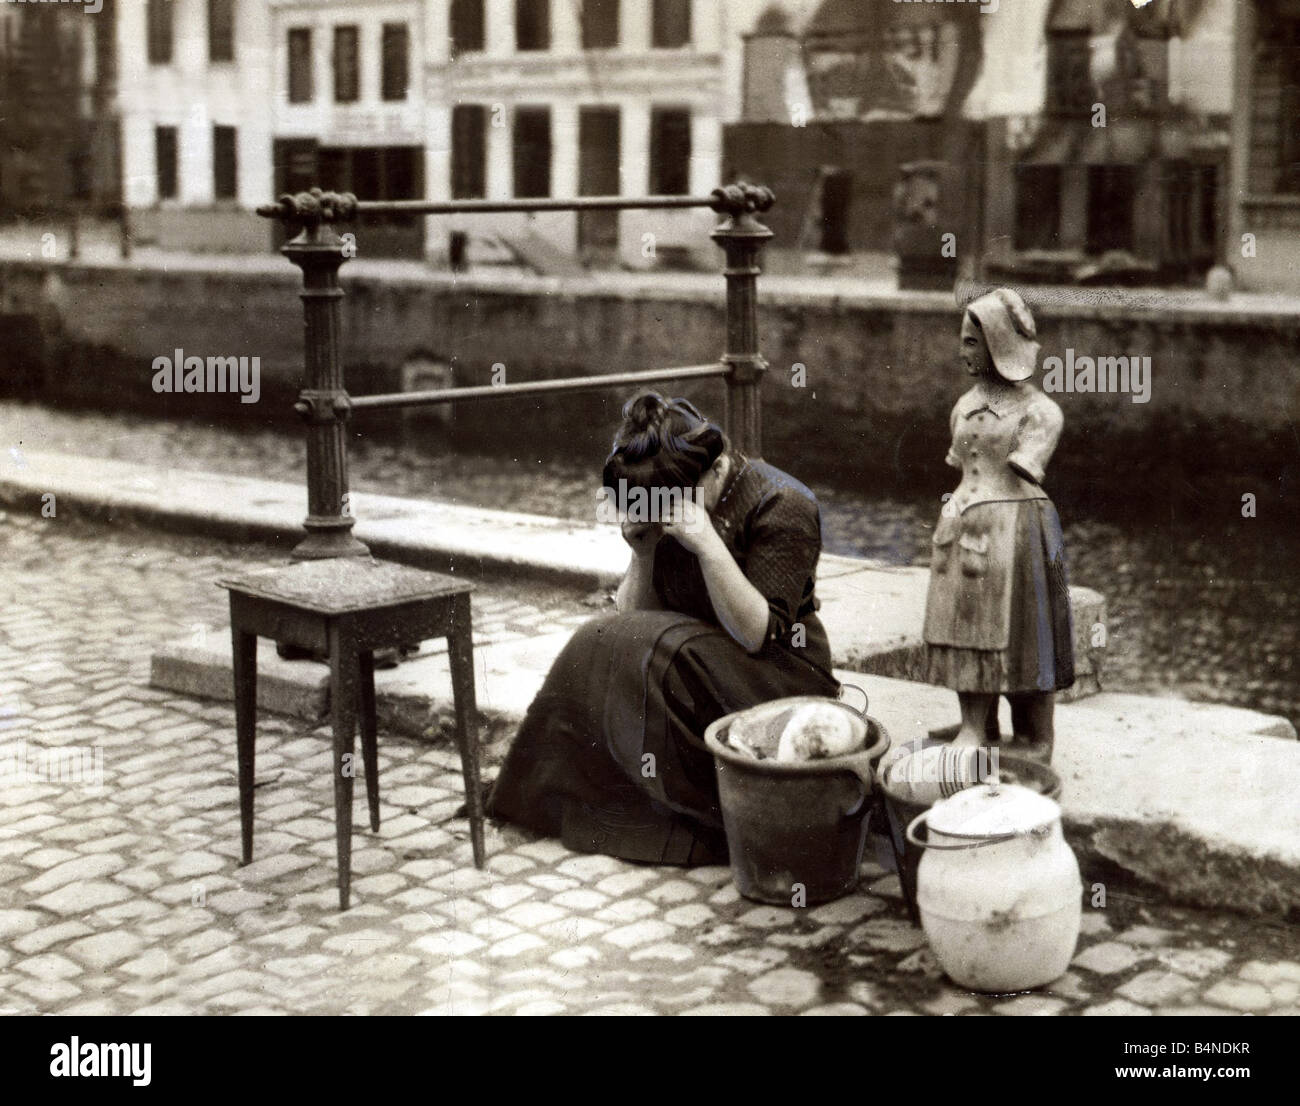 Anvers Belgique 1914 une femme pleure au bord de la route à côté d'une table quelques pots et casseroles et une lourde statue de pierre ses trésors du monde Août 1914 Banque D'Images